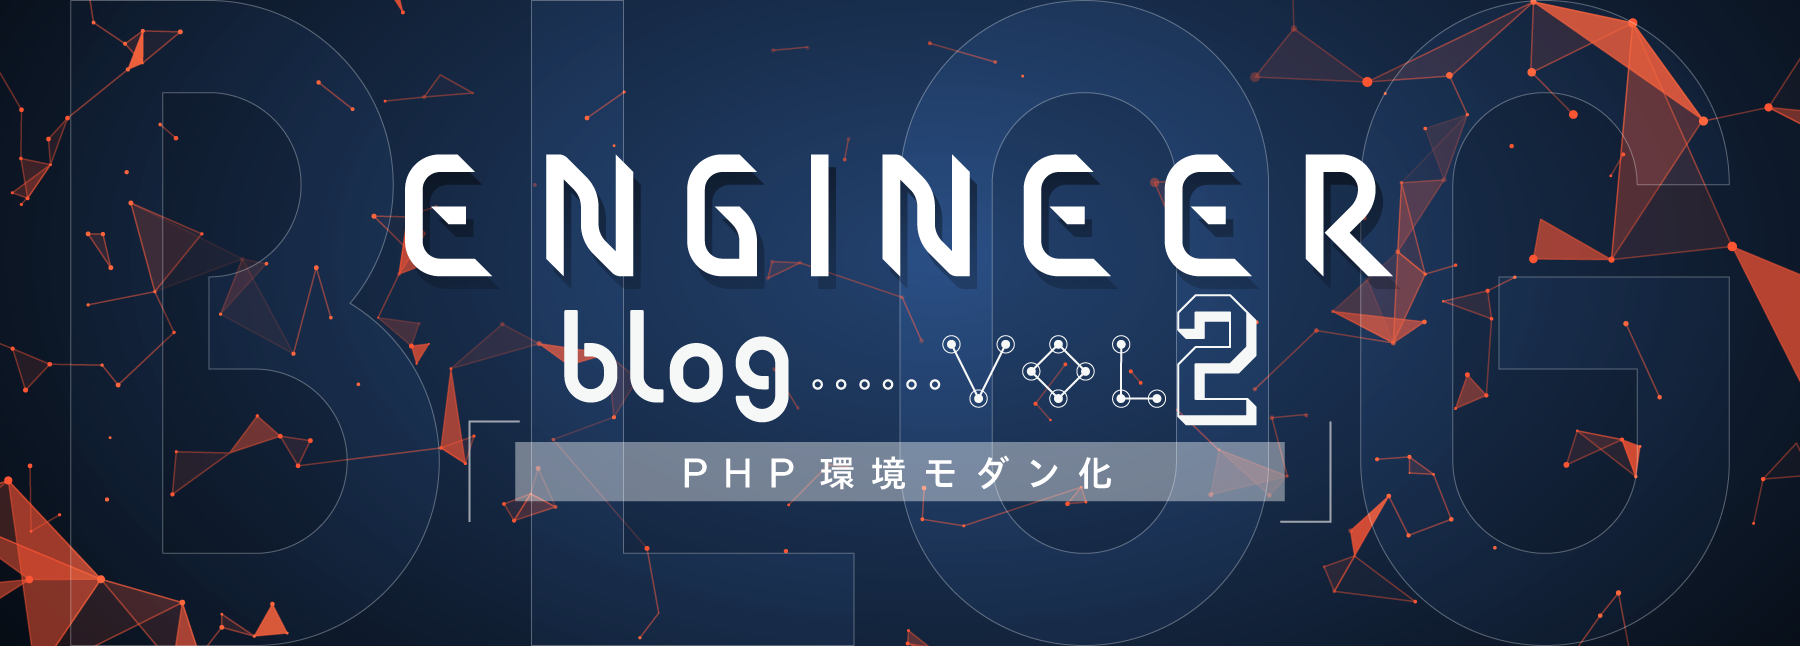 コロプラのエンジニアブログ Vol.2【PHP 環境モダン化】